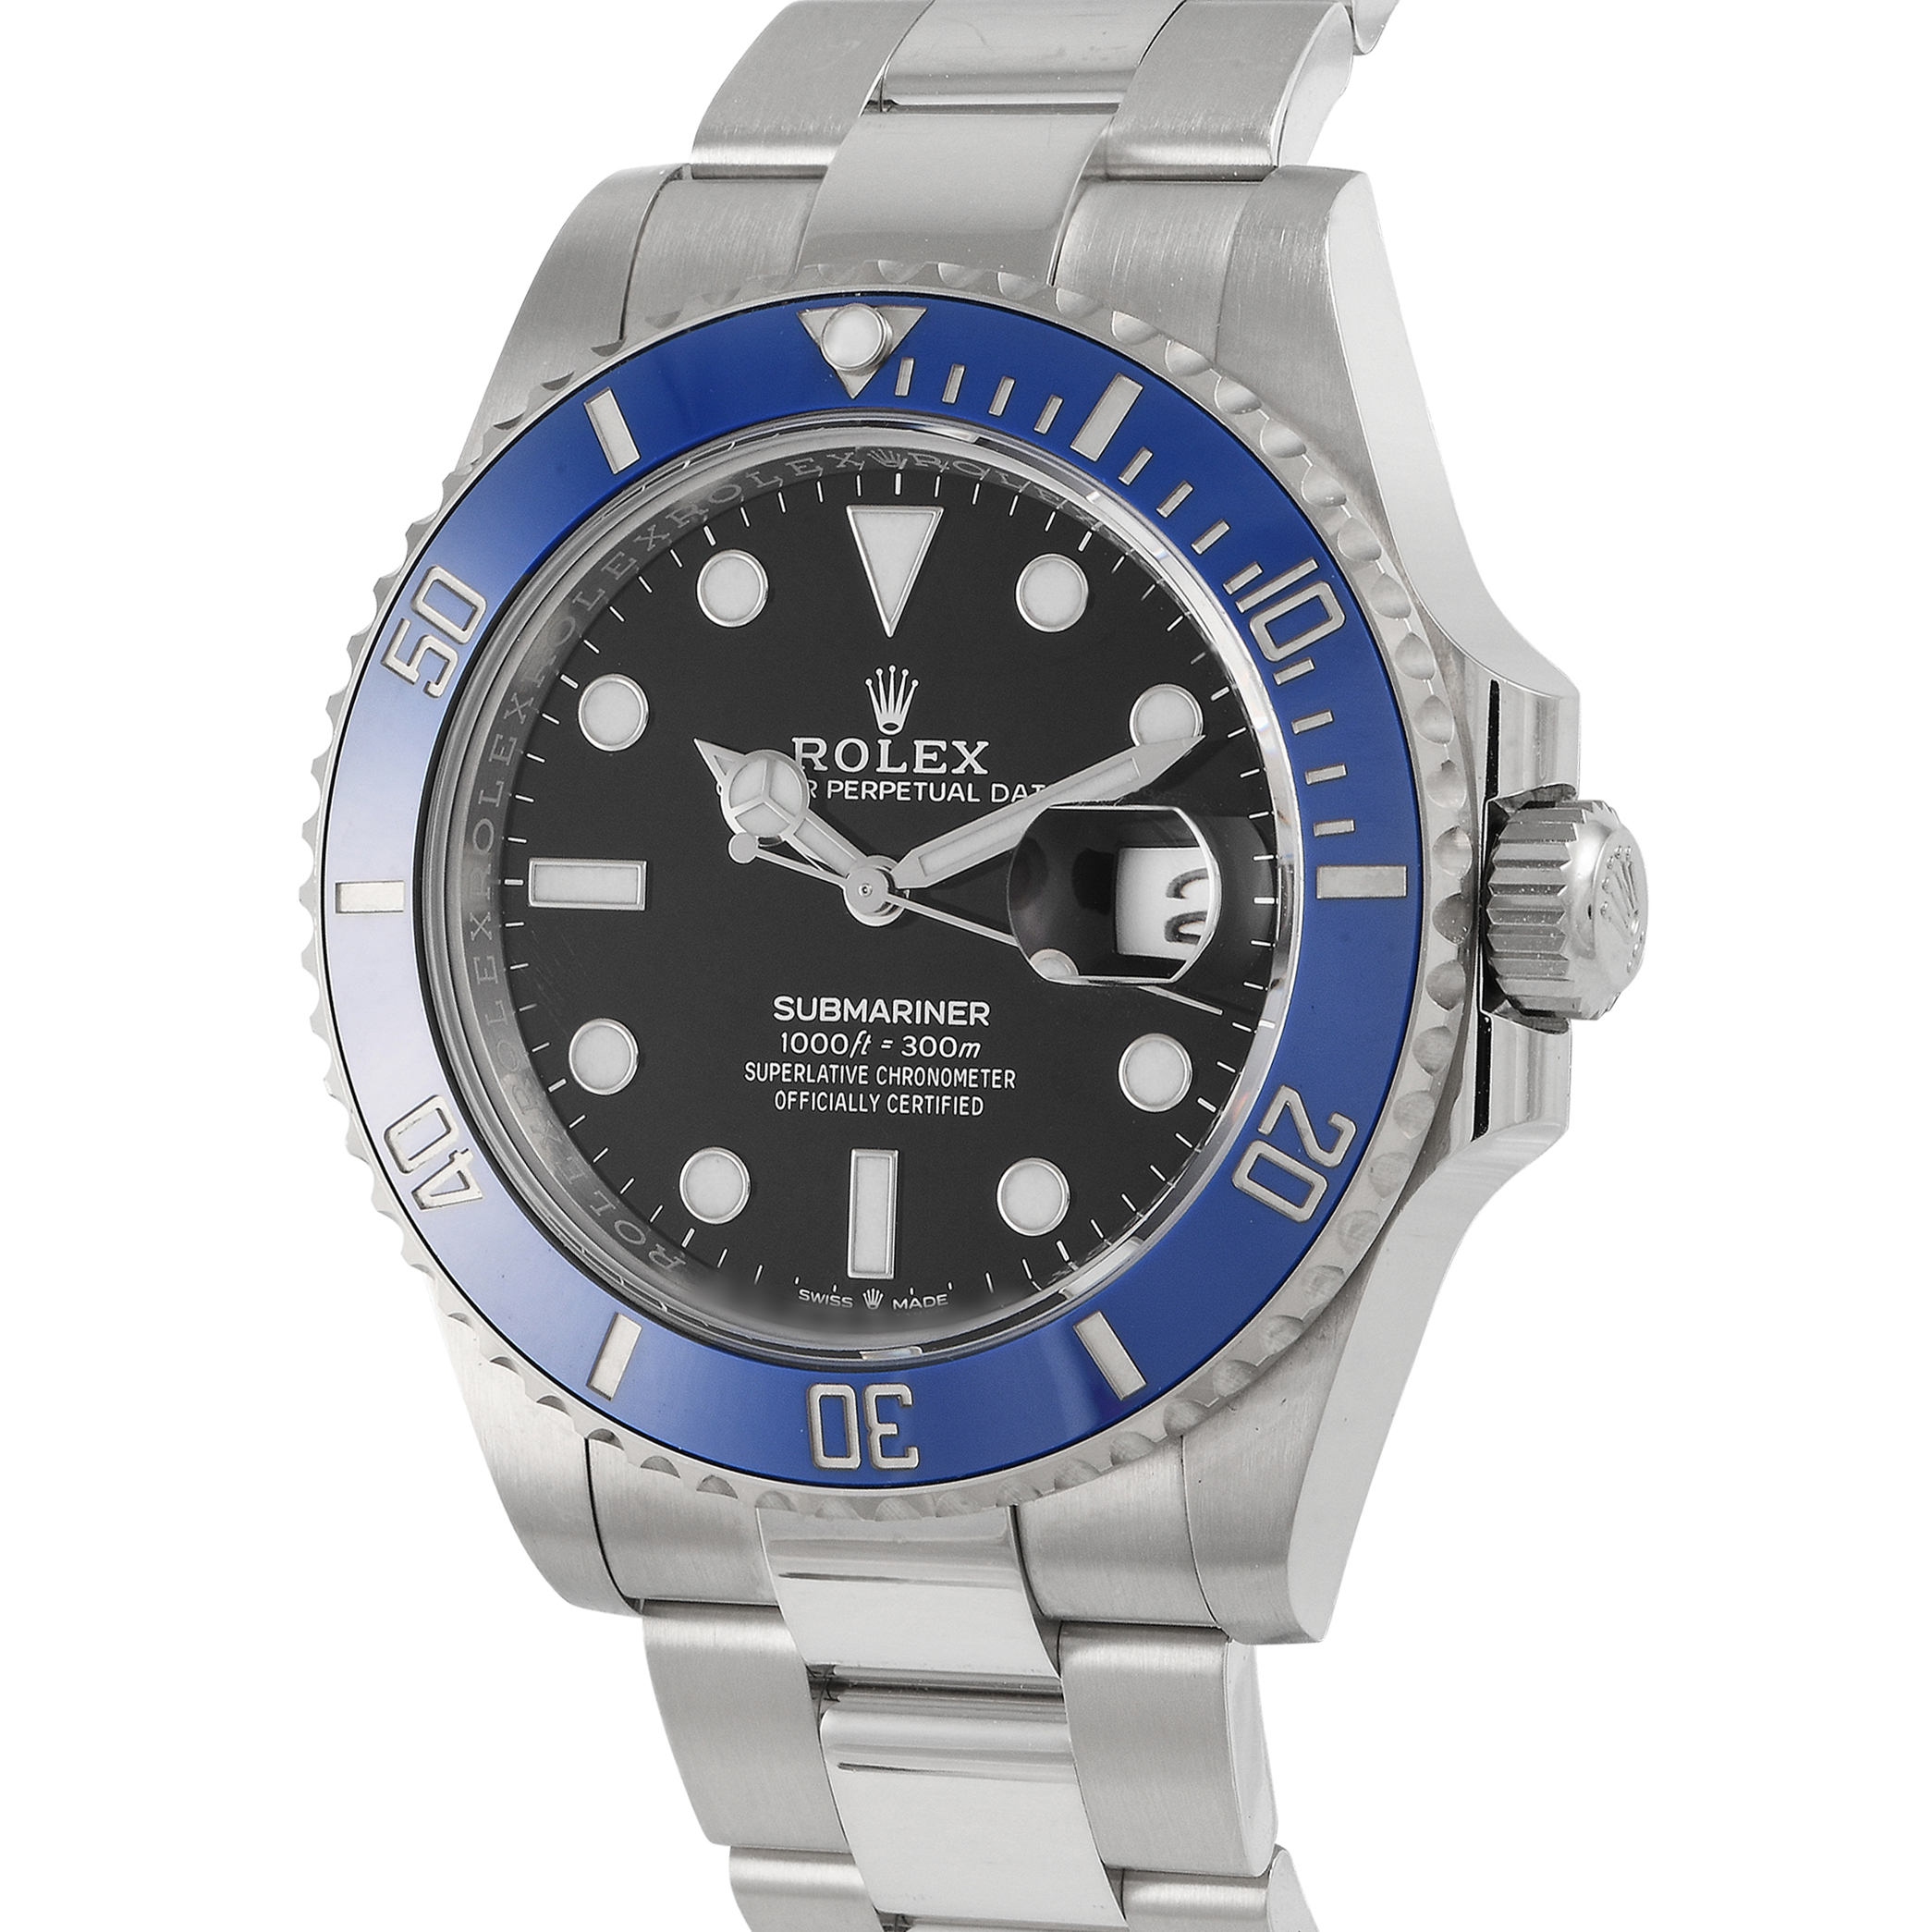 Rolex Submariner Date Watch 126619LB